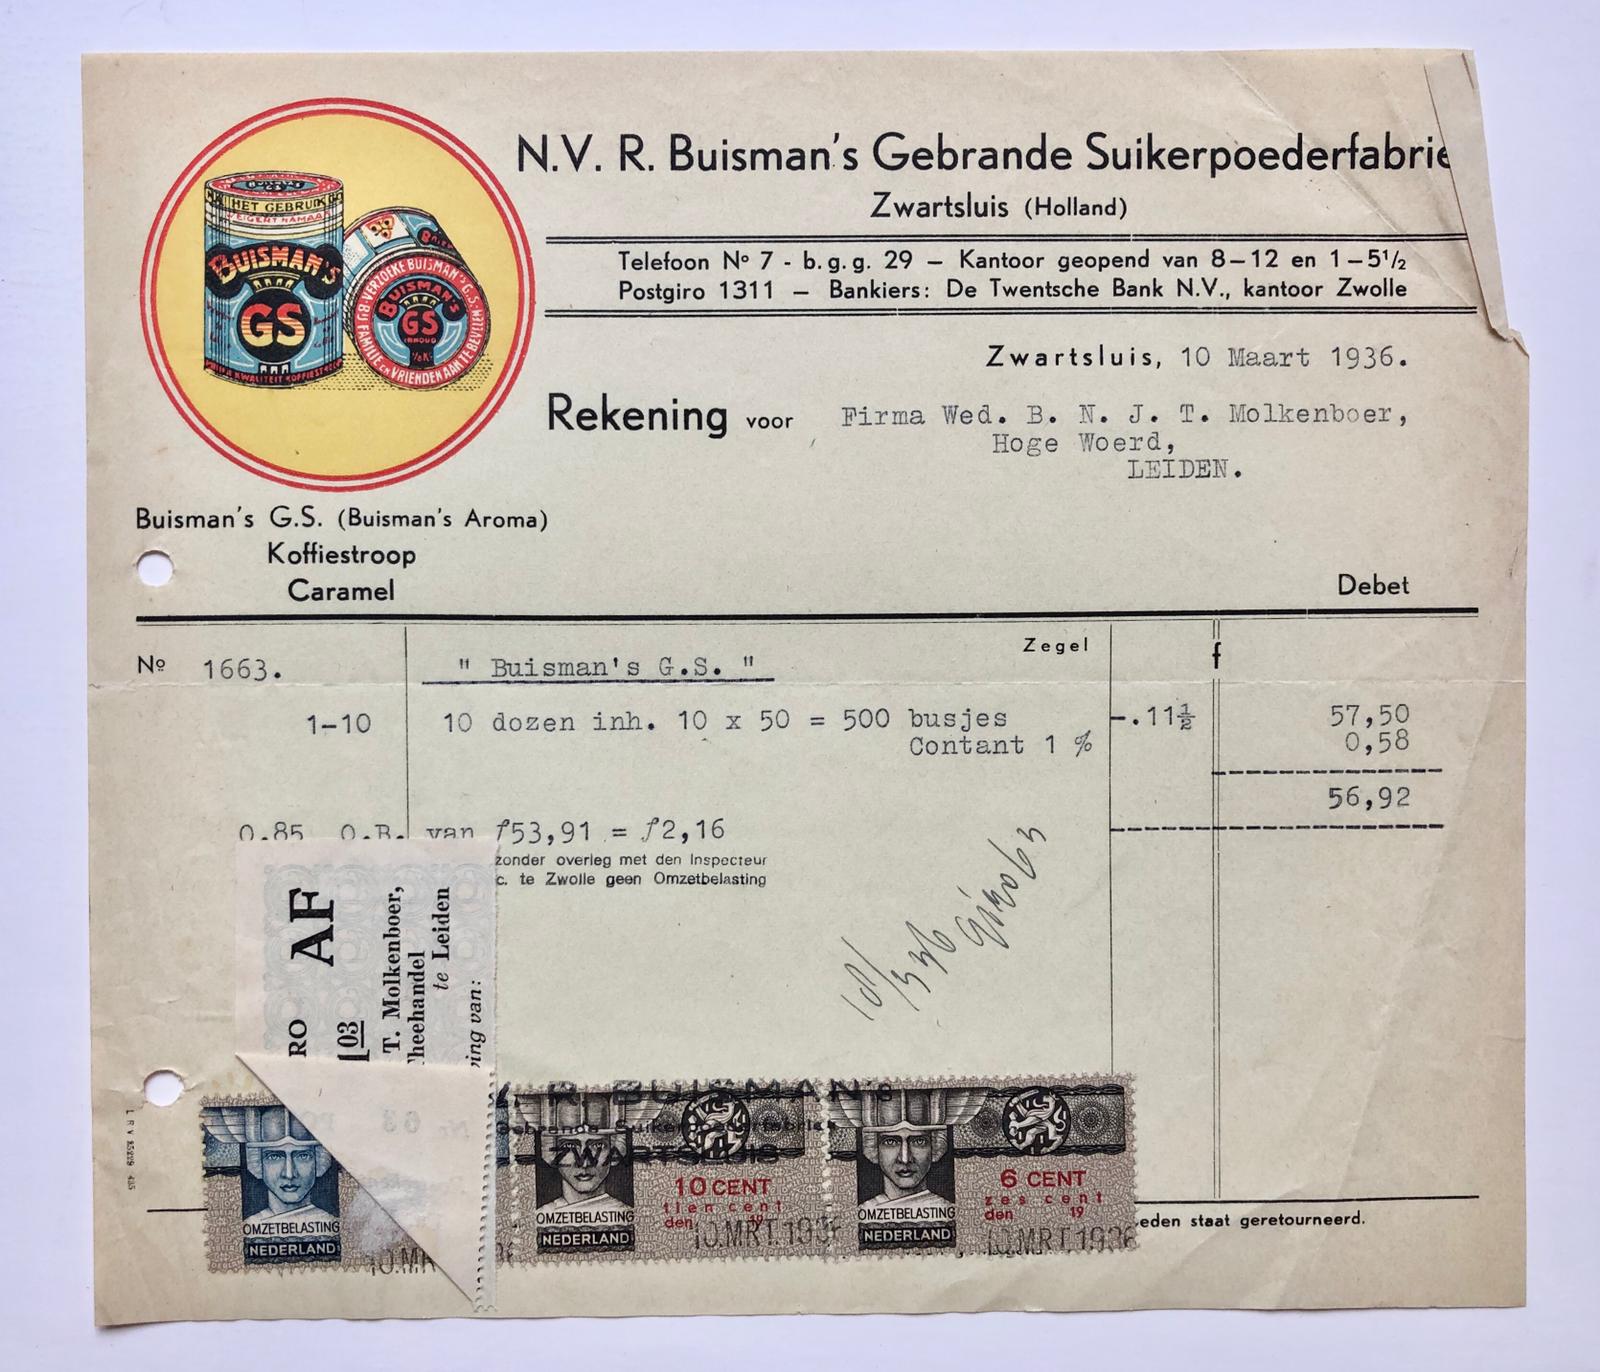 [Receipt, sugar factory, 1936] Nota van N.V. R. Buisman's Gebrande Suikerpoederfabriek (koffiestroop, caramel) te Zwartsluis, 1936.